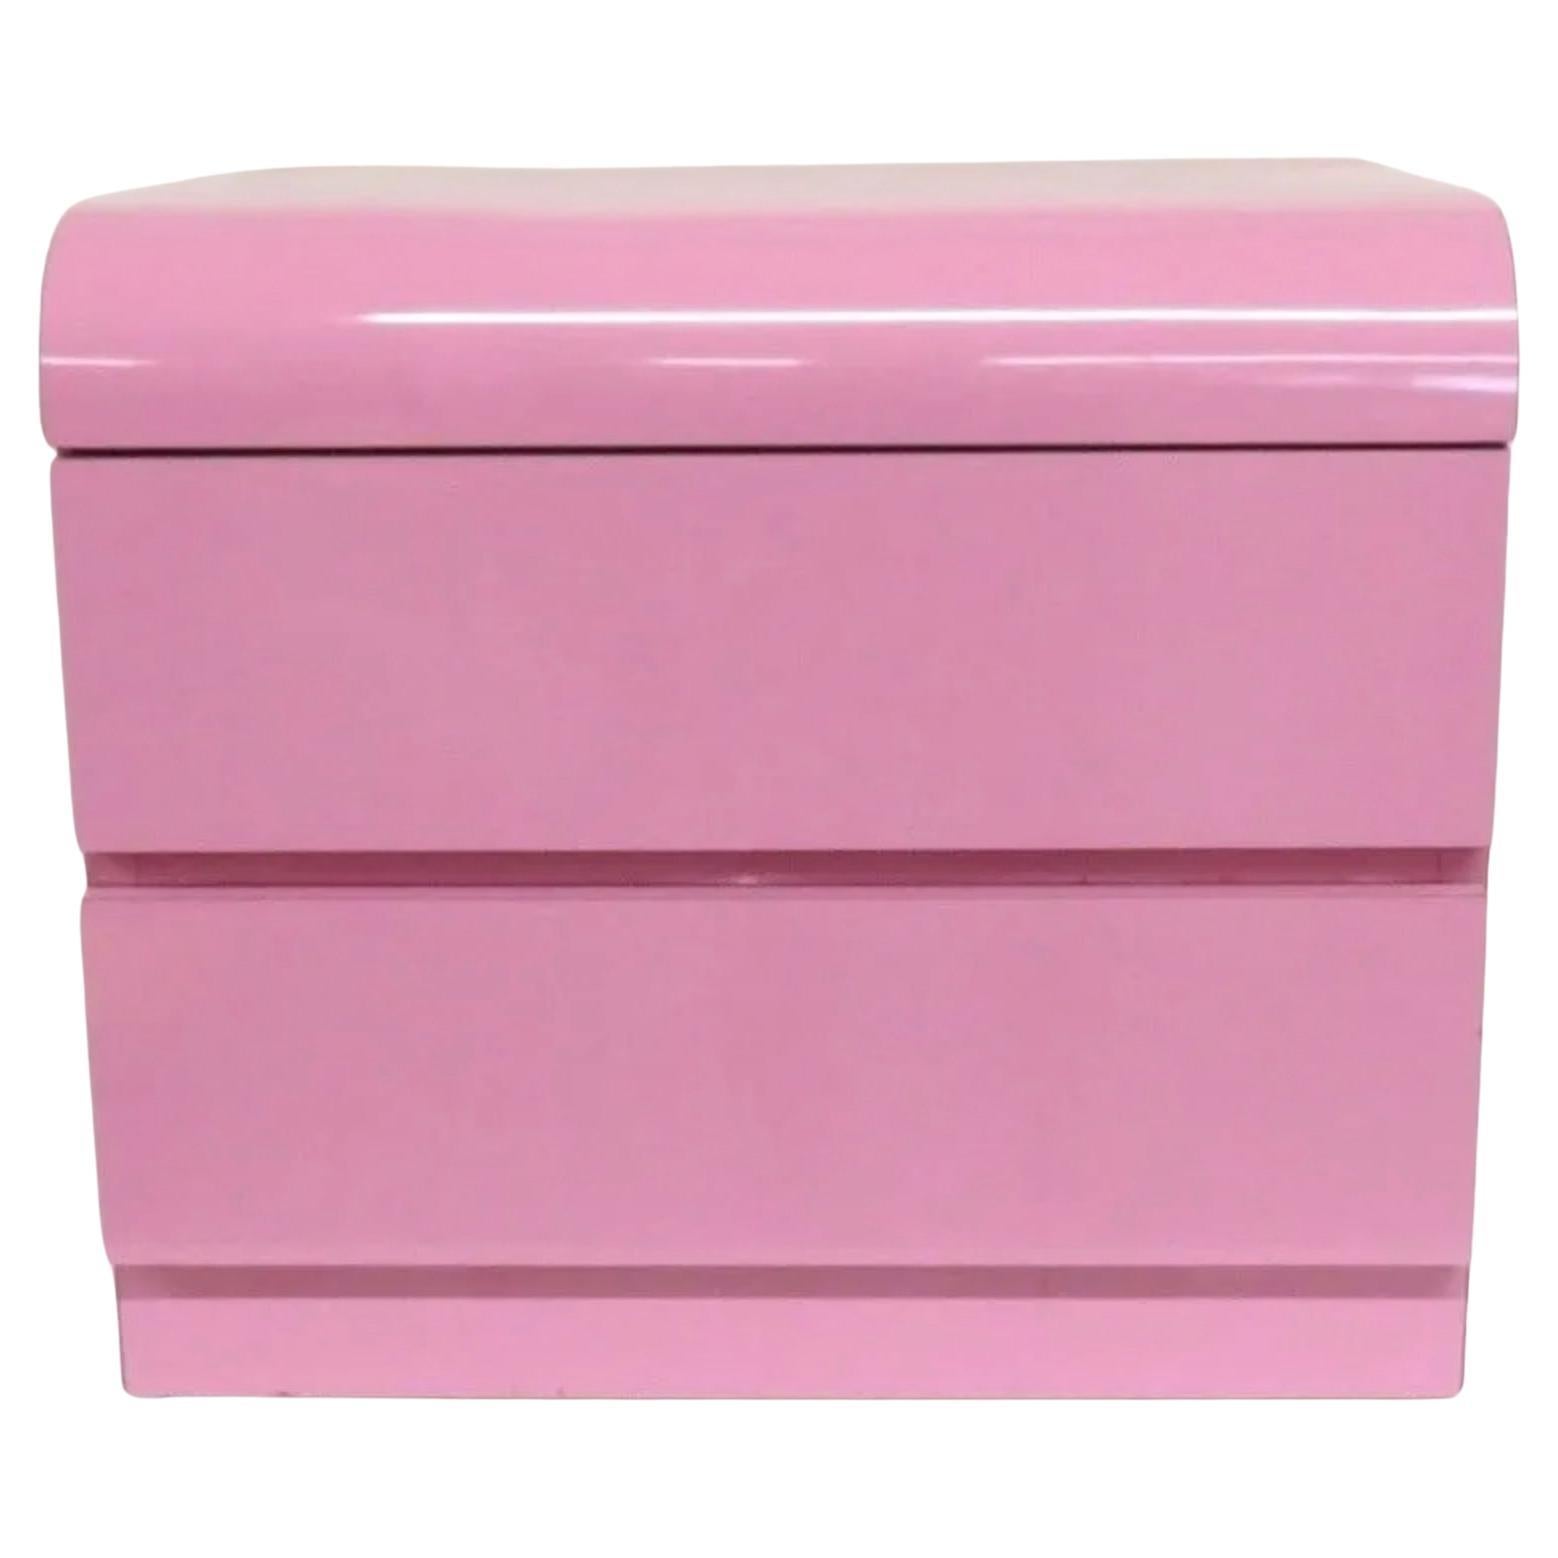 Schöne postmoderne bubblegum rosa Glanz Laminat Wasserfall Front 2 Schublade Nachttisch, circa 1980. Sehr sauber innen und außen fast wie neu. Sehen Sie sich Fotos an. Beide Schubladen haben Metallgleiter mit Anschlag. Hervorragend geeignet für